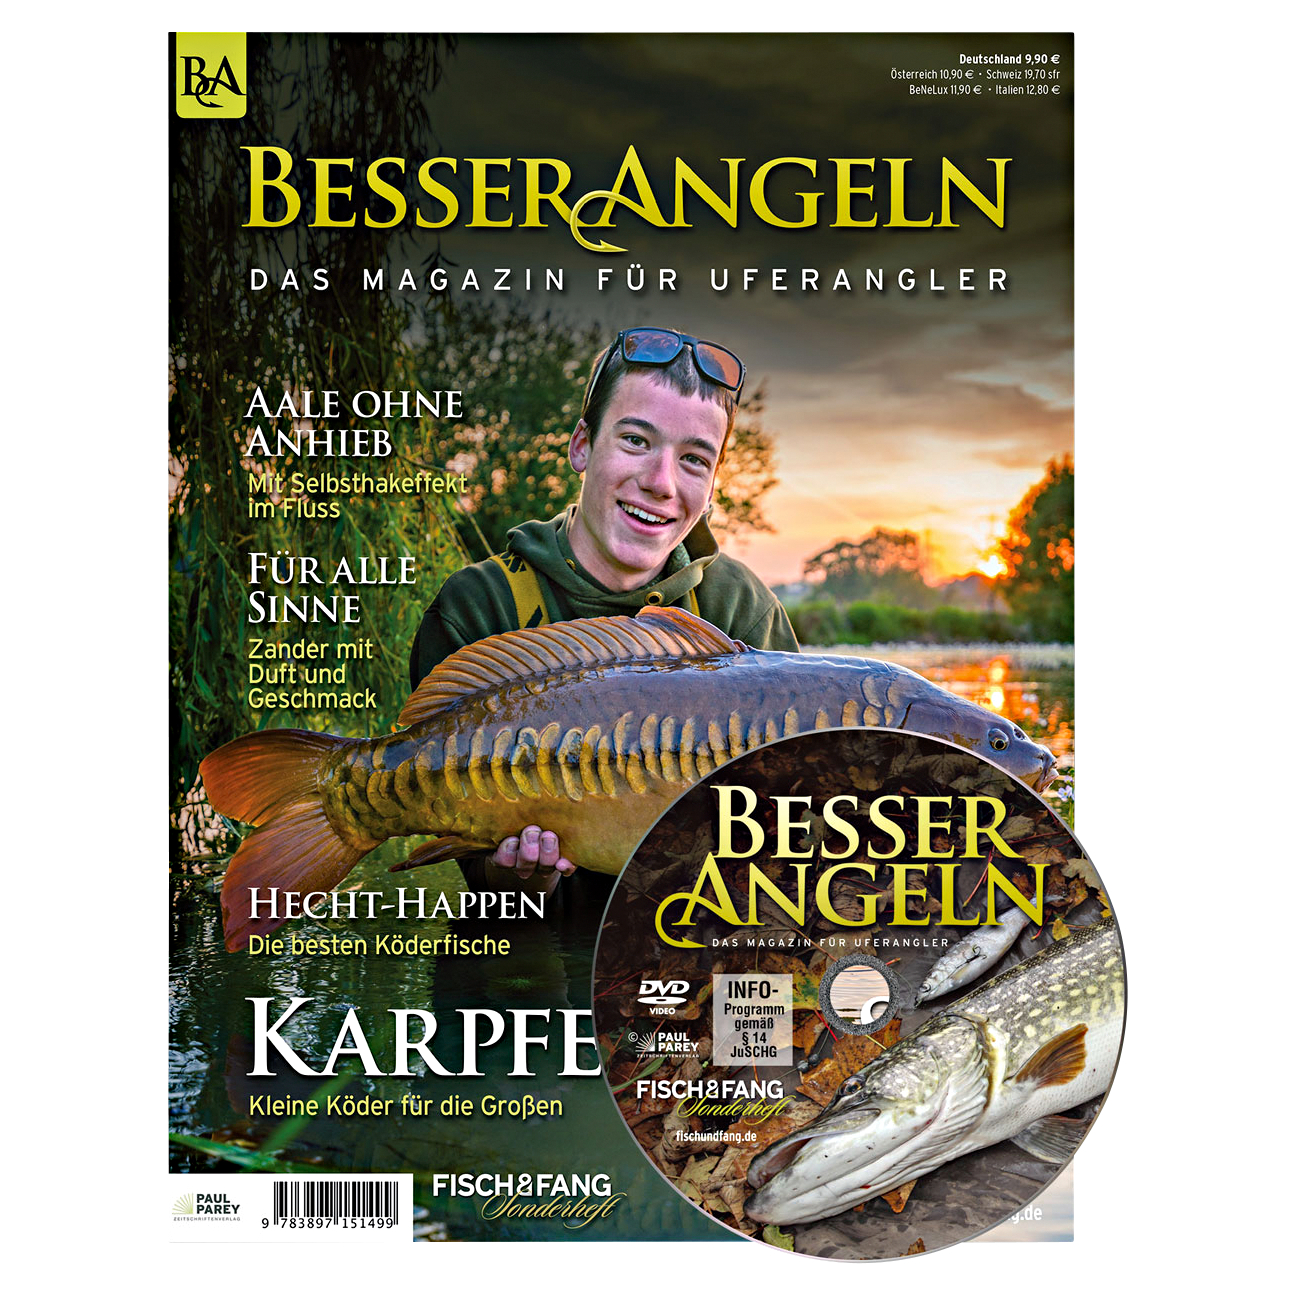 Fishing Book "FISCH & FANG Sonderheft Nr. 42: Besser Angeln" 